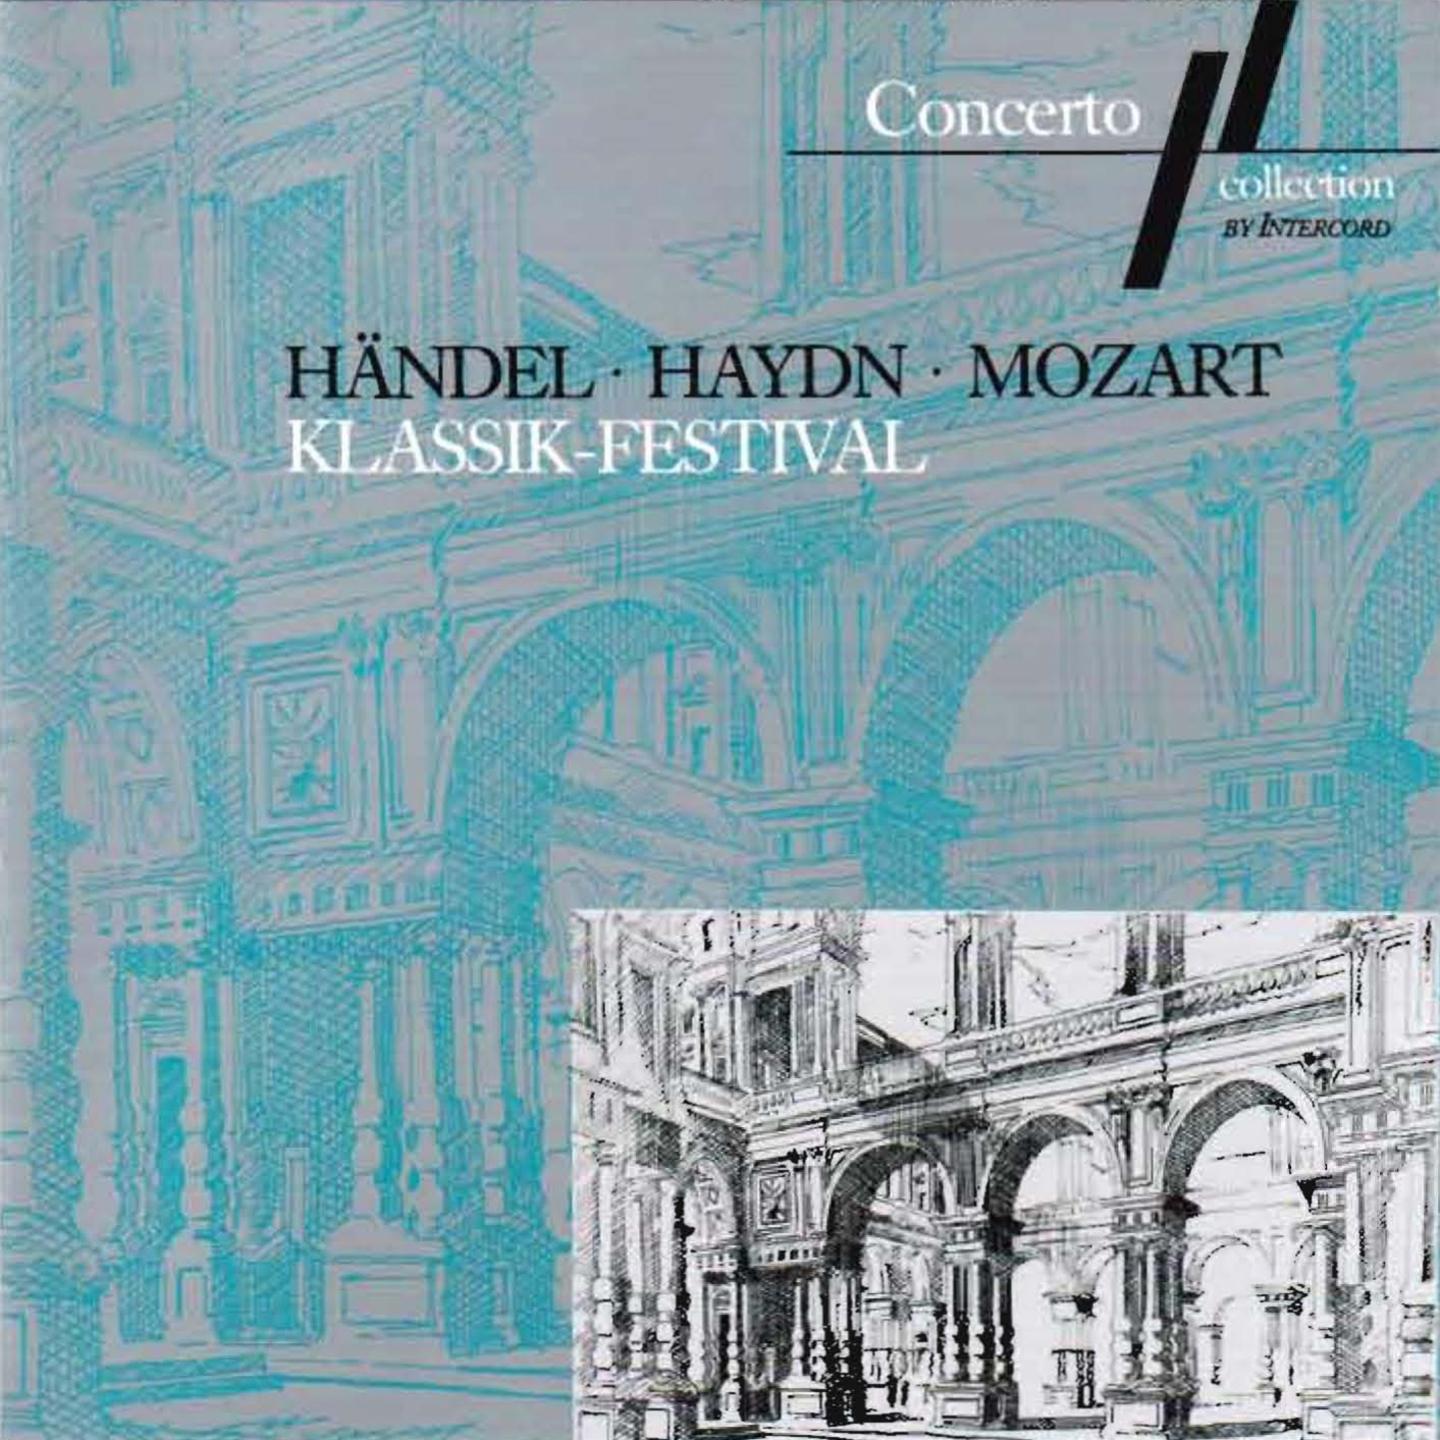 Handel, Haydn, Mozart: Klassik-Festival